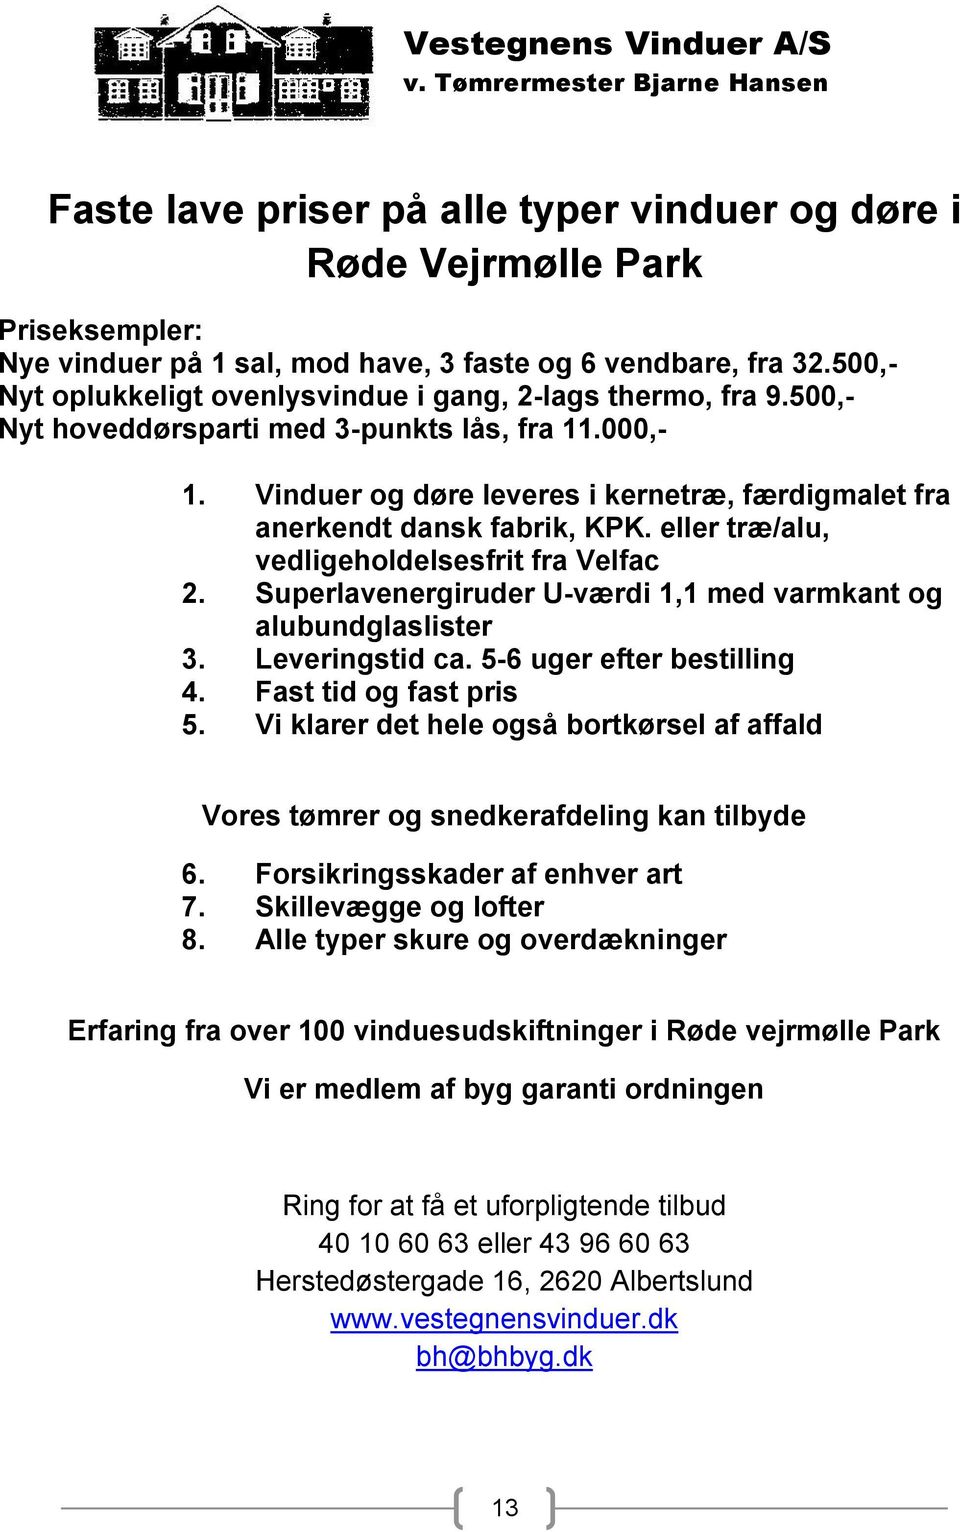 Vinduer og døre leveres i kernetræ, færdigmalet fra anerkendt dansk fabrik, KPK. eller træ/alu, vedligeholdelsesfrit fra Velfac 2. Superlavenergiruder U-værdi 1,1 med varmkant og alubundglaslister 3.